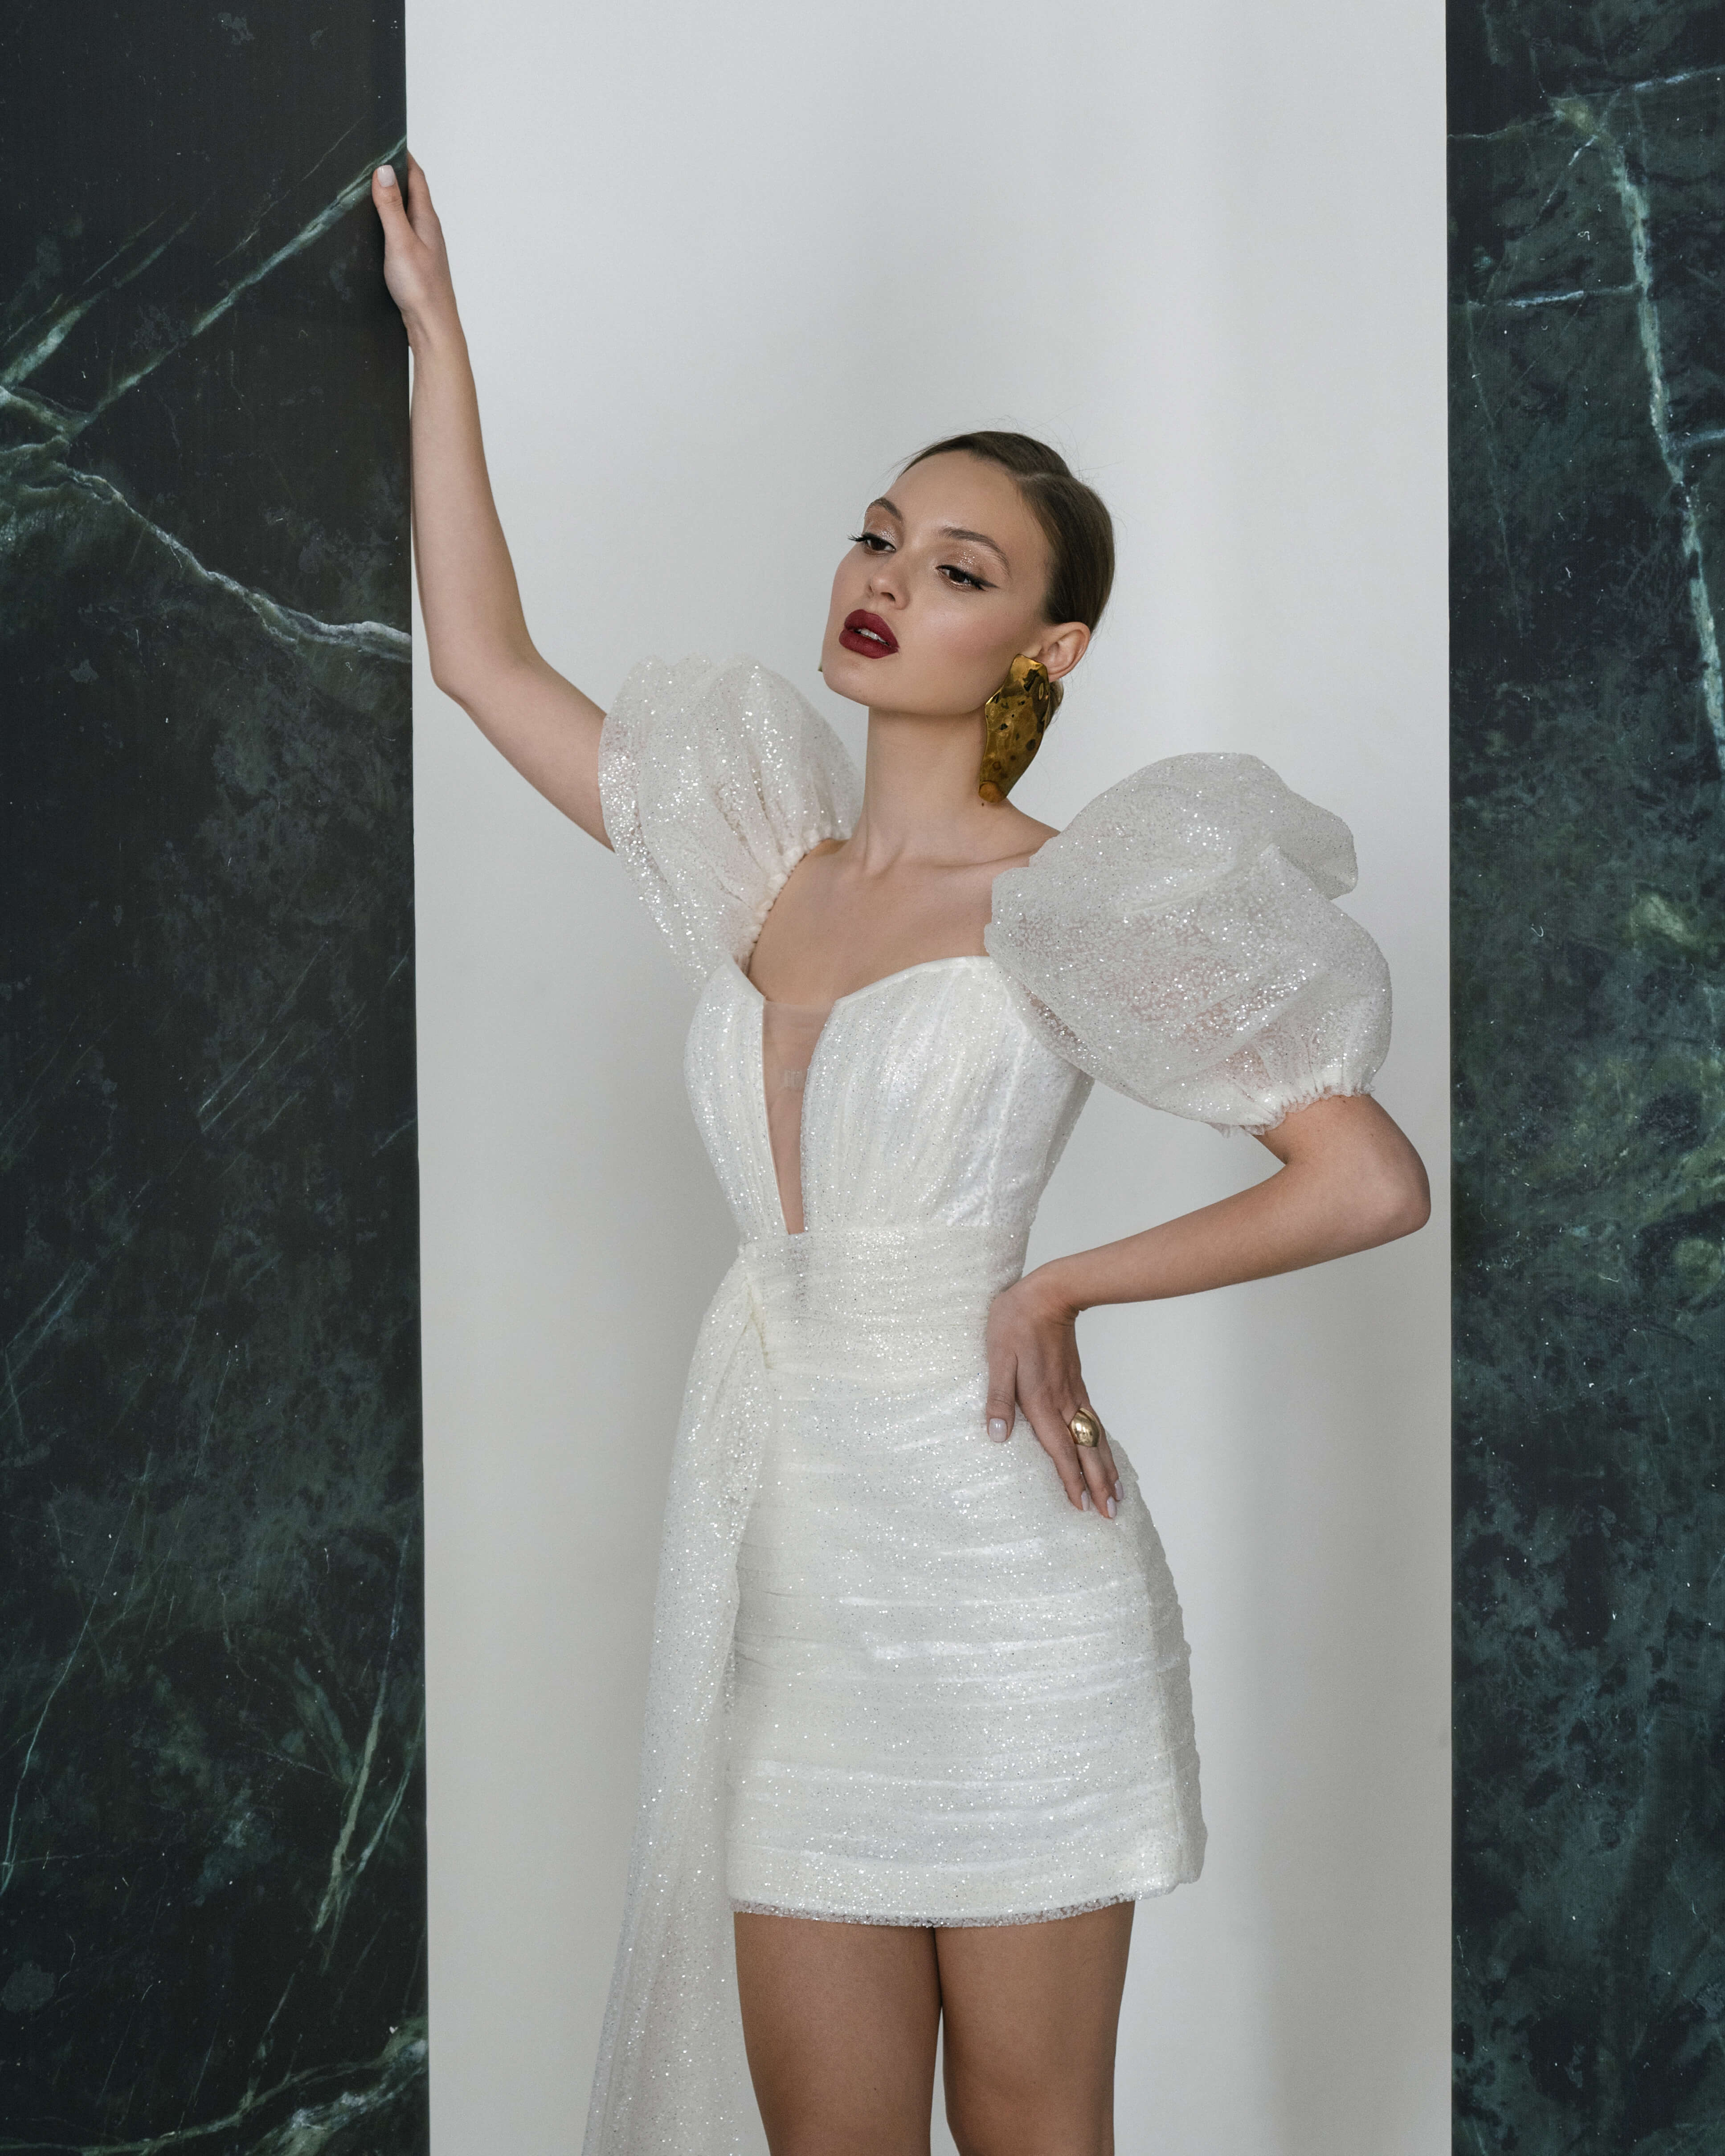 Купить свадебное платье «Рейкьявик Мини» Рара Авис из коллекции Гелекси 2022 года в салоне «Мэри Трюфель»